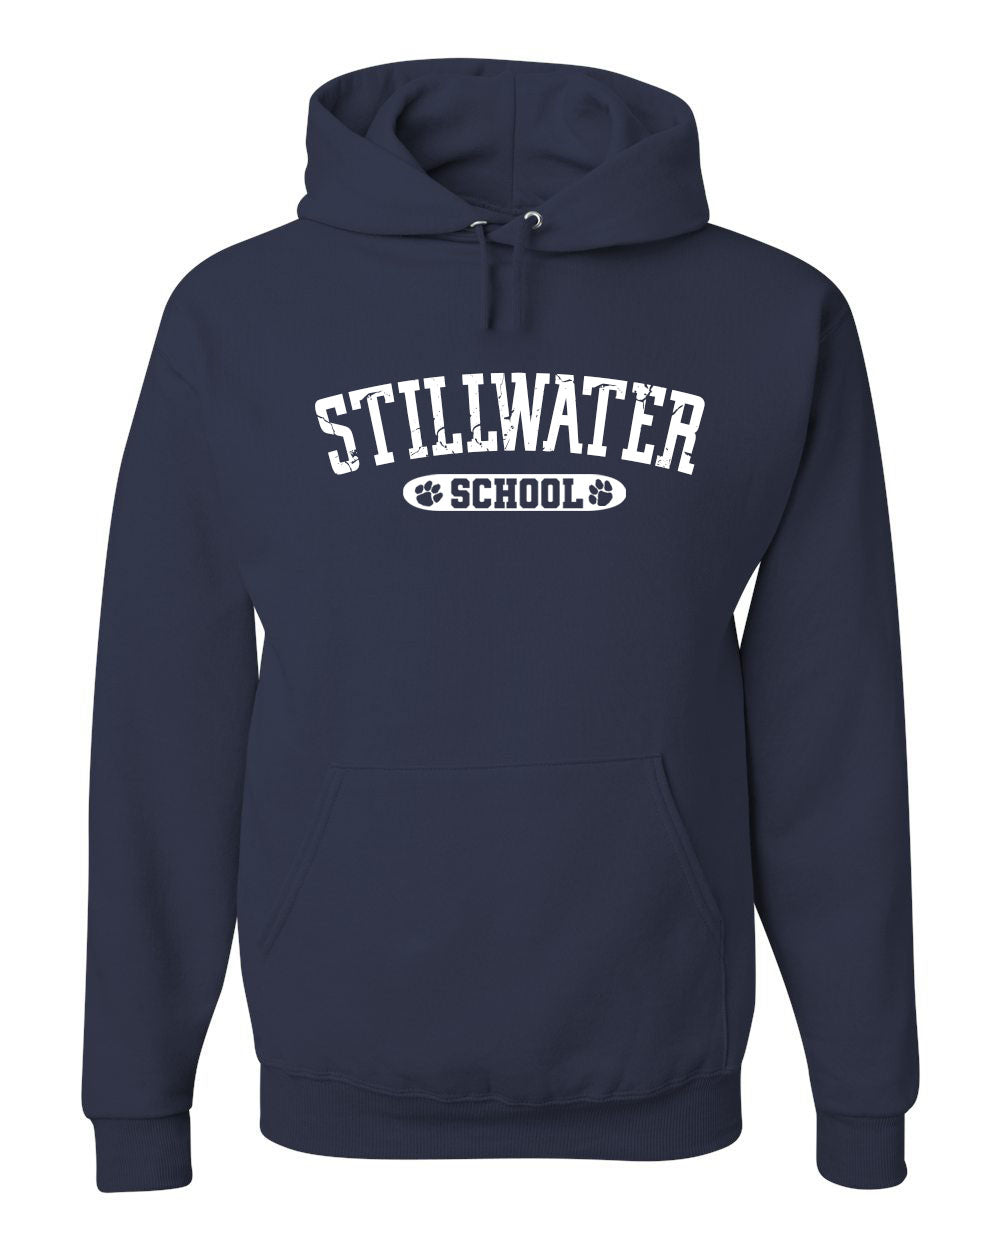 Vintage Stillwater School Sweatshirt